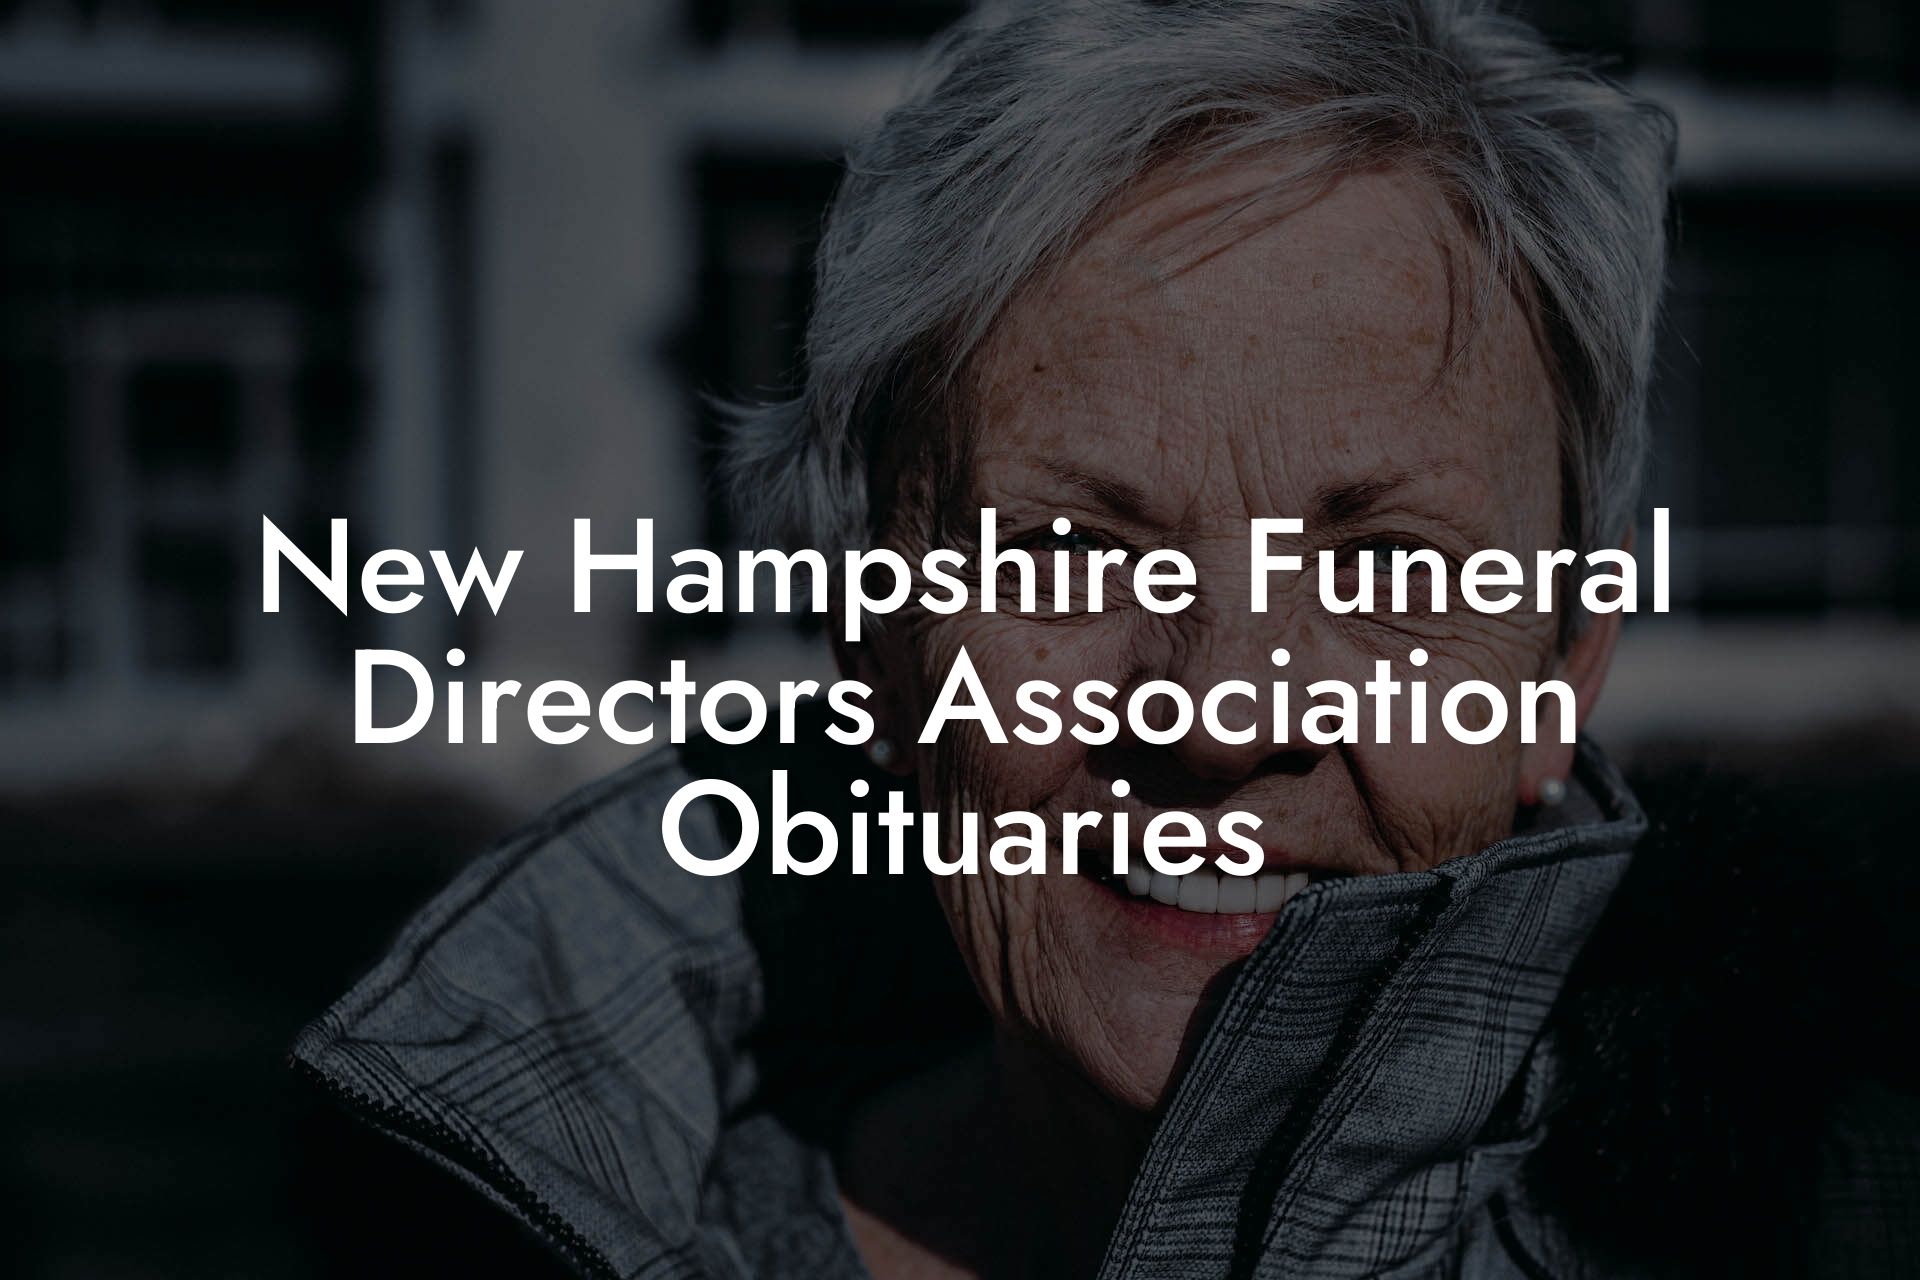 New Hampshire Funeral Directors Association Obituaries